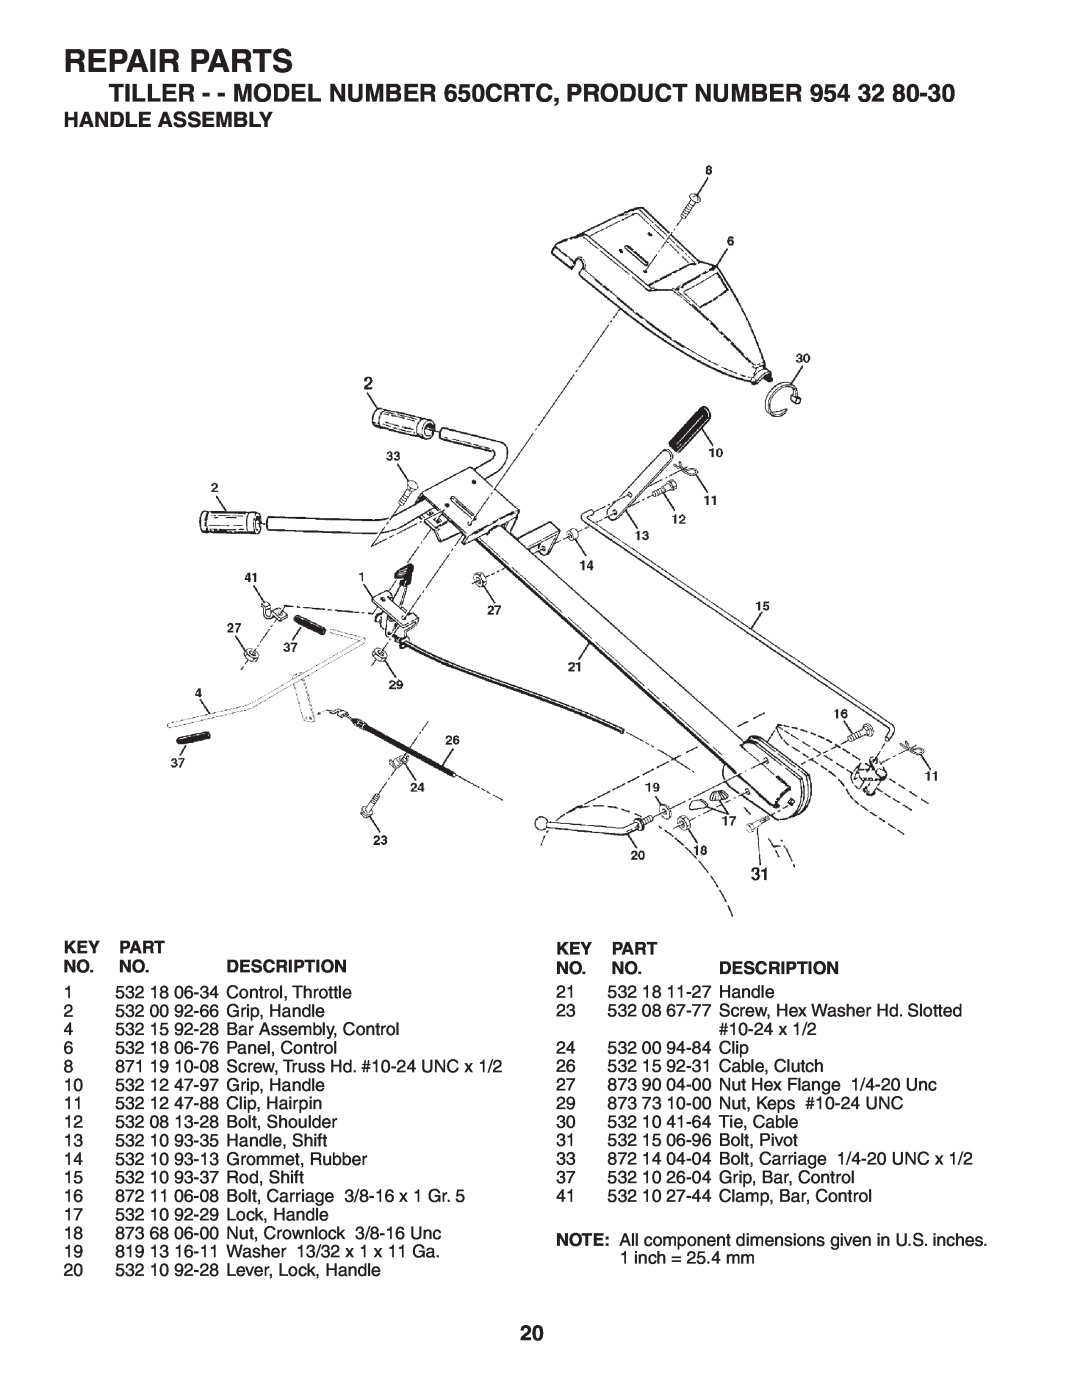 Husqvarna 650CRT owner manual Repair Parts, Handle Assembly, Key Part No. No. Description 